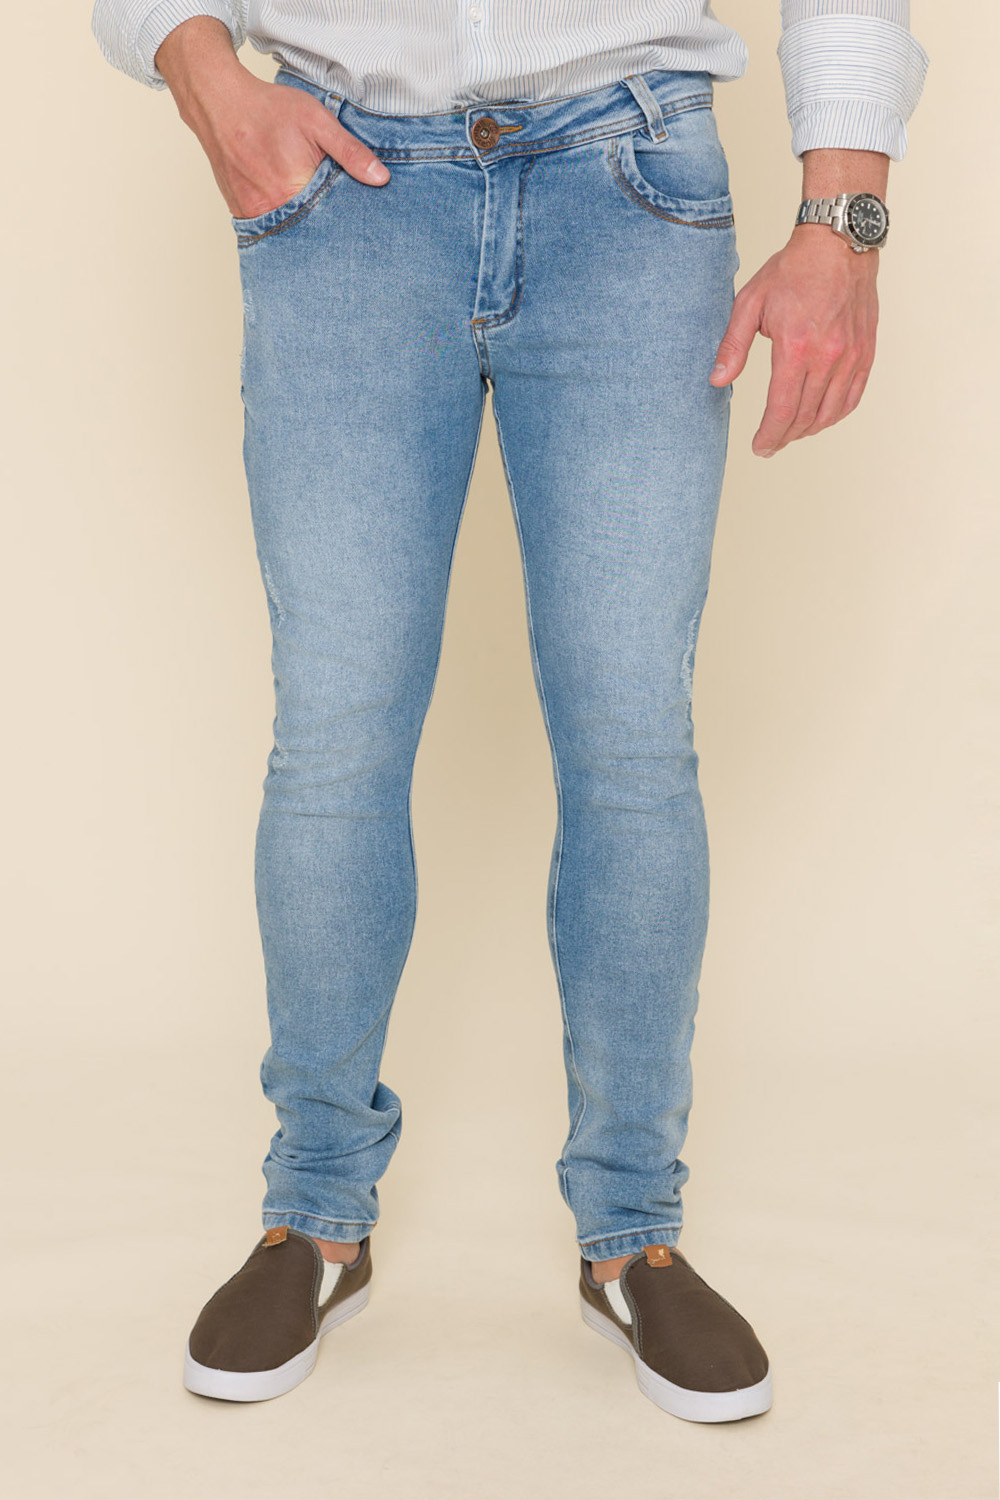 Calça Jeans Skinny - Jeans Claro 1